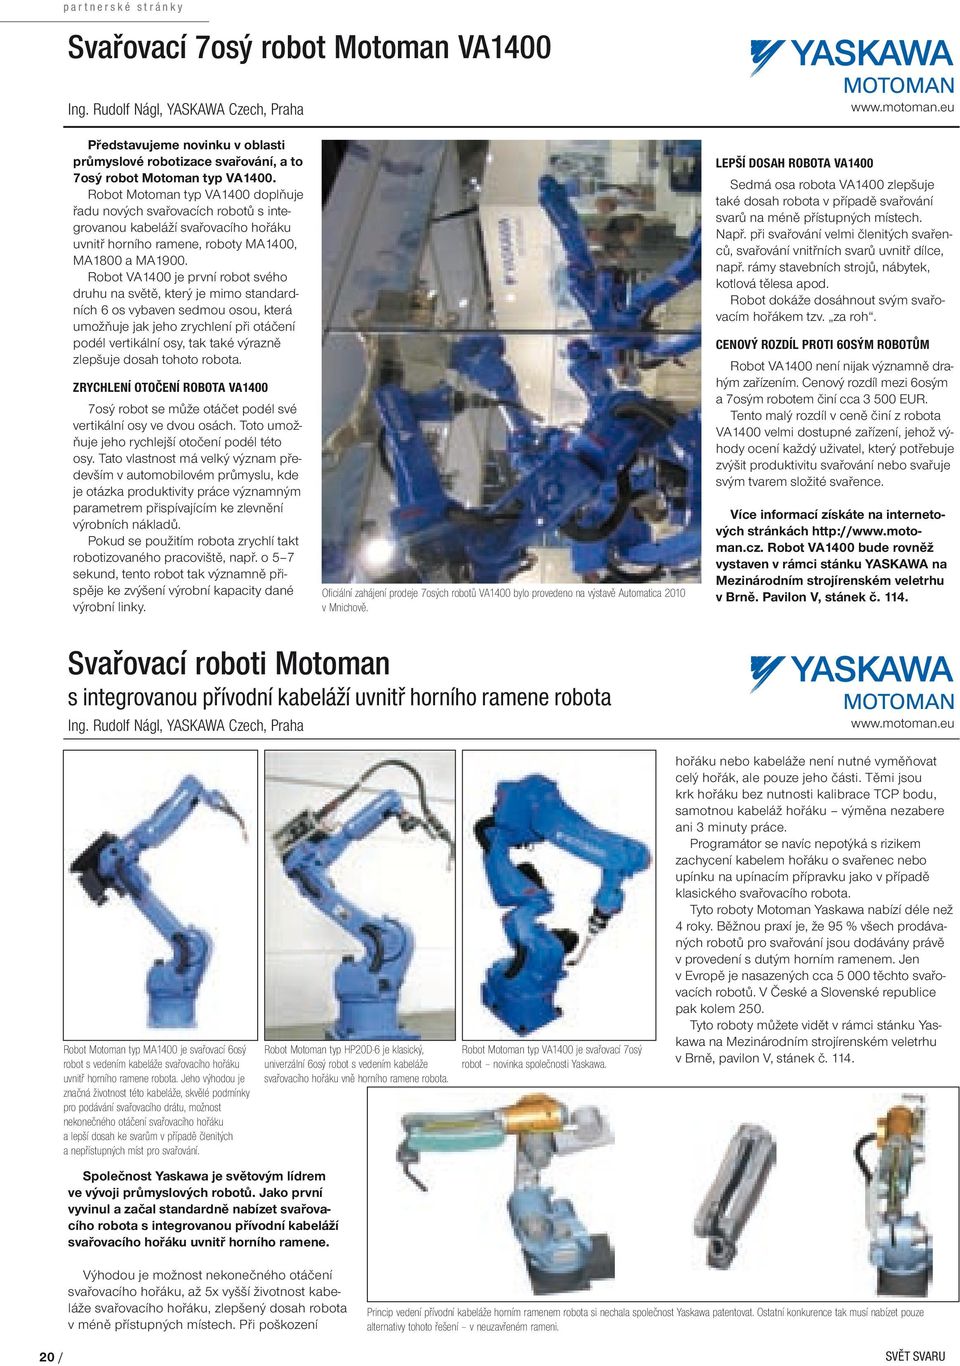 Robot VA1400 je první robot svého druhu na světě, který je mimo standardních 6 os vybaven sedmou osou, která umožňuje jak jeho zrychlení při otáčení podél vertikální osy, tak také výrazně zlepšuje